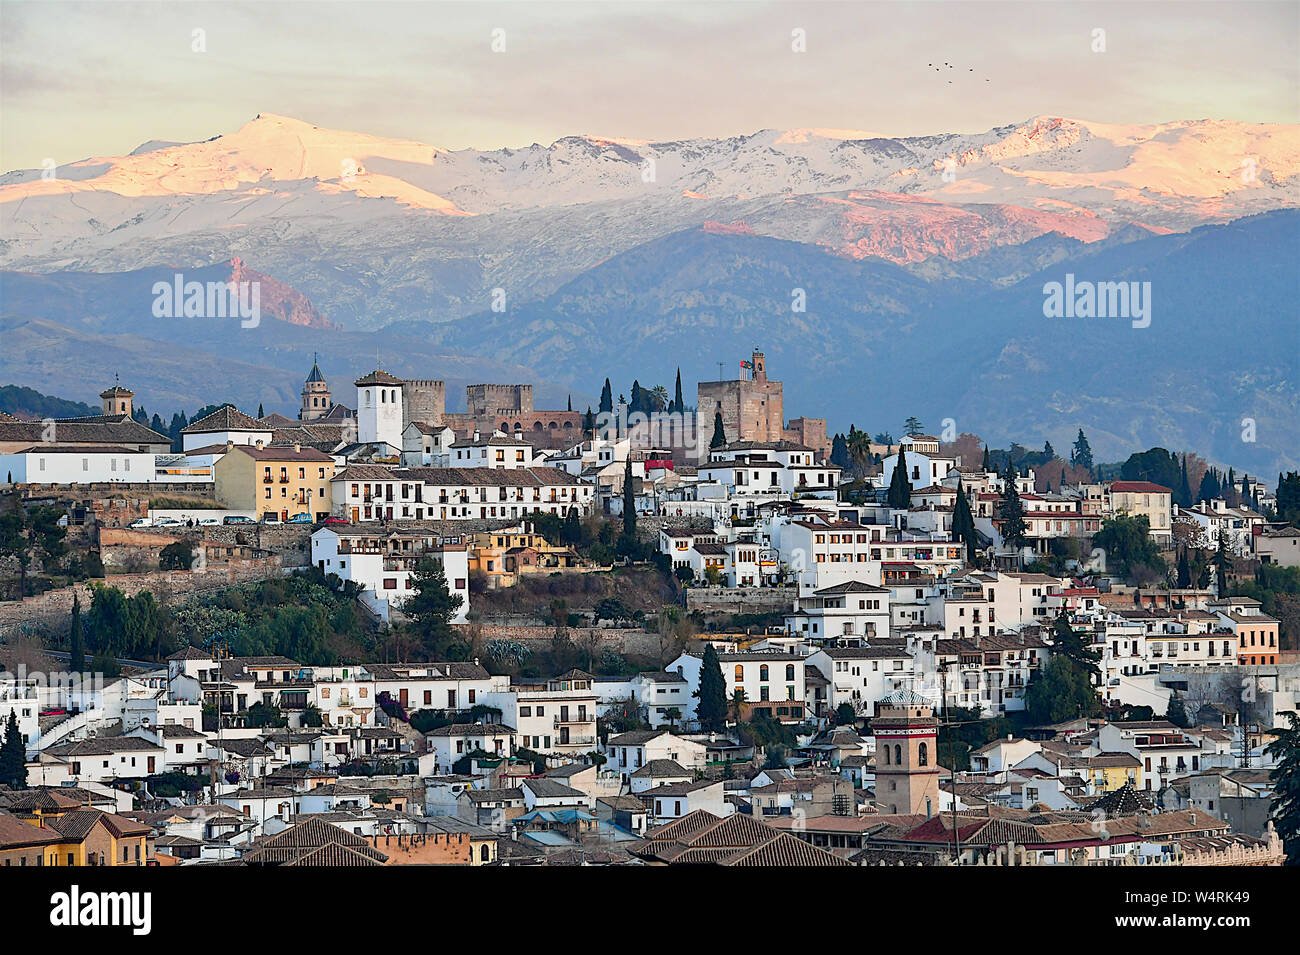 Albaicin district, Granada, Andalusia, Spain Stock Photo